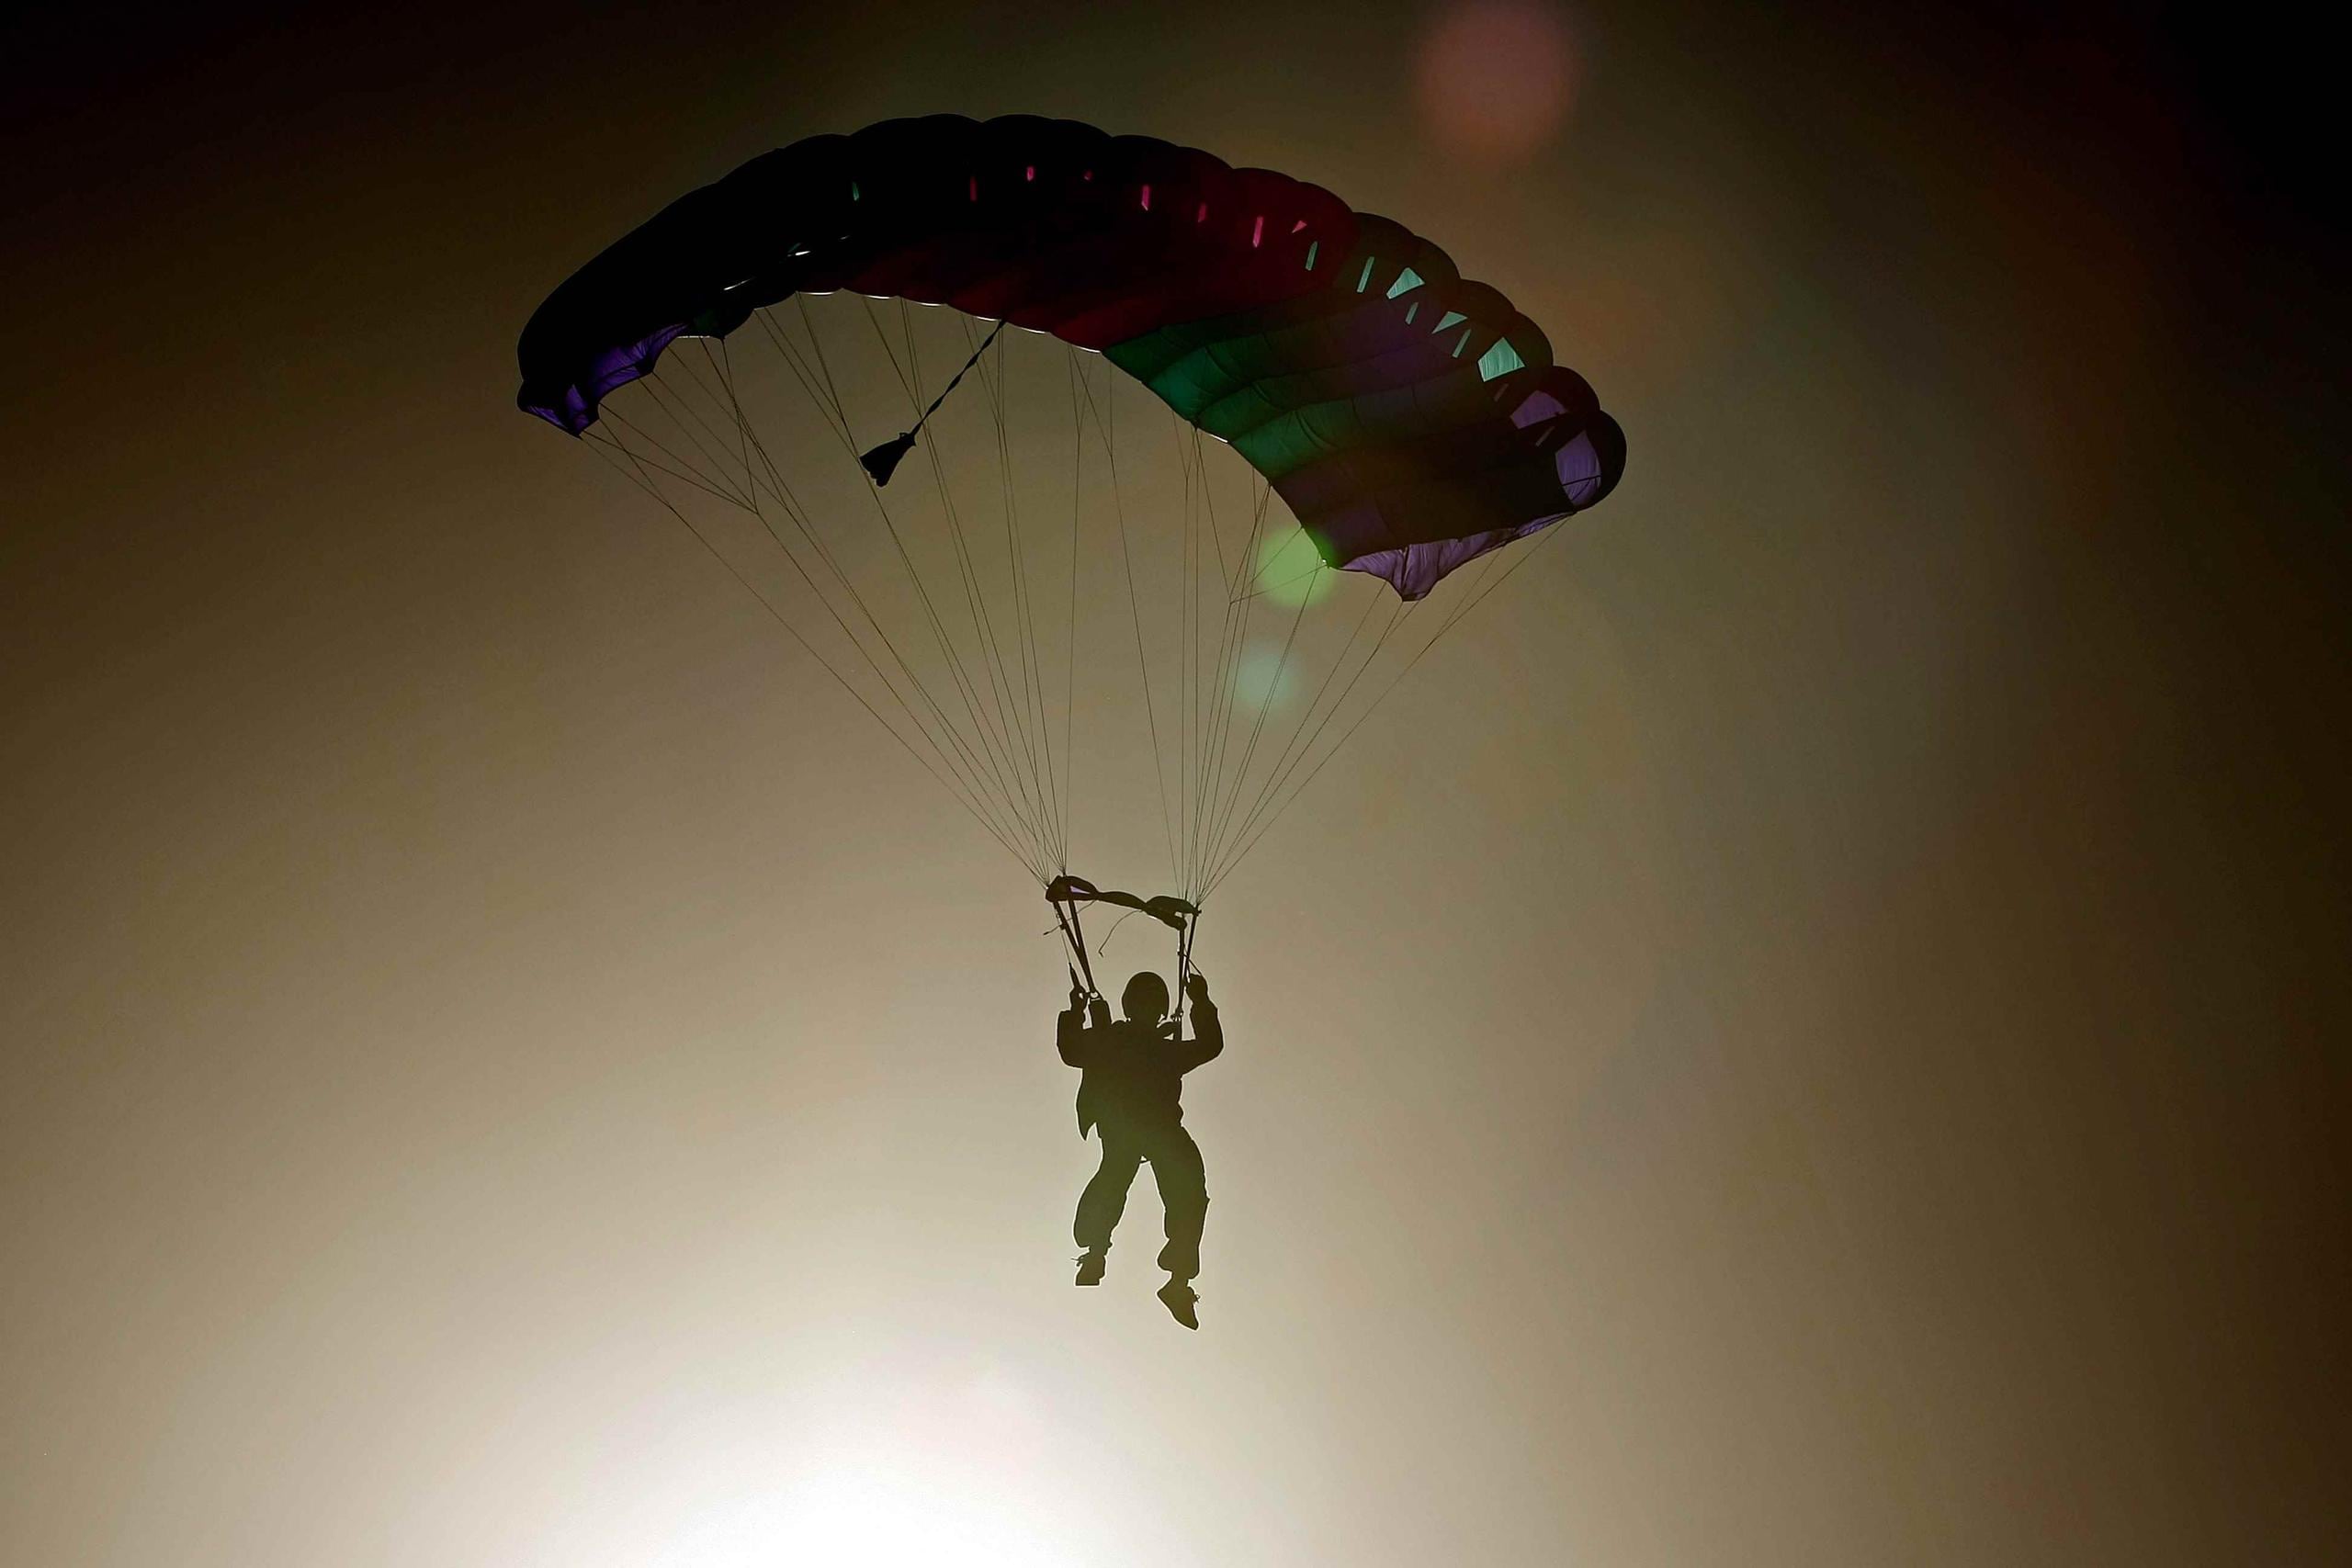 La policía y la Administración Federal de Aviación investigan la muerte, incluso si el paracaídas de Stremmel se abrió adecuadamente. (Archivo / GFR Media)